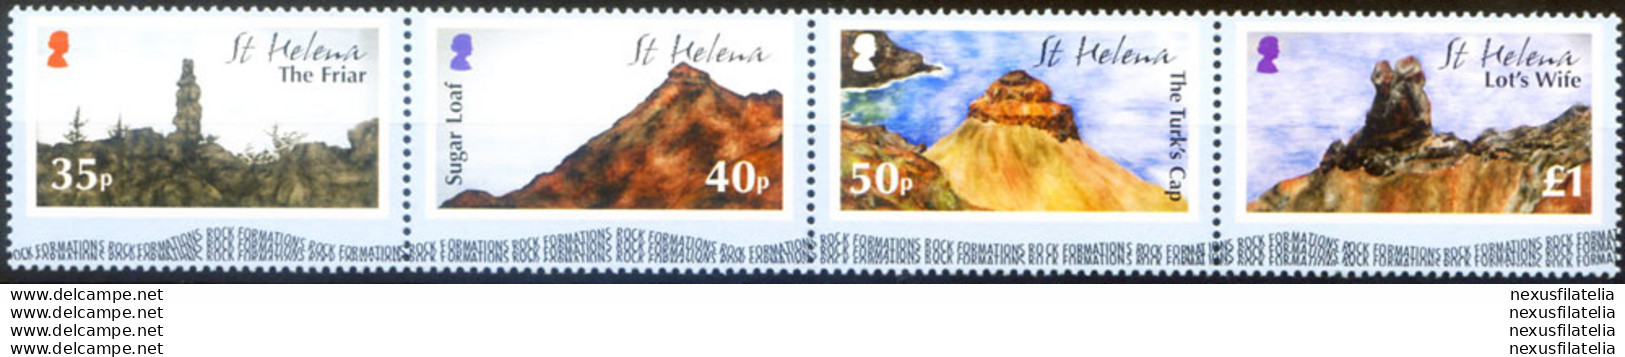 Formazioni Rocciose 2005. - Isla Sta Helena